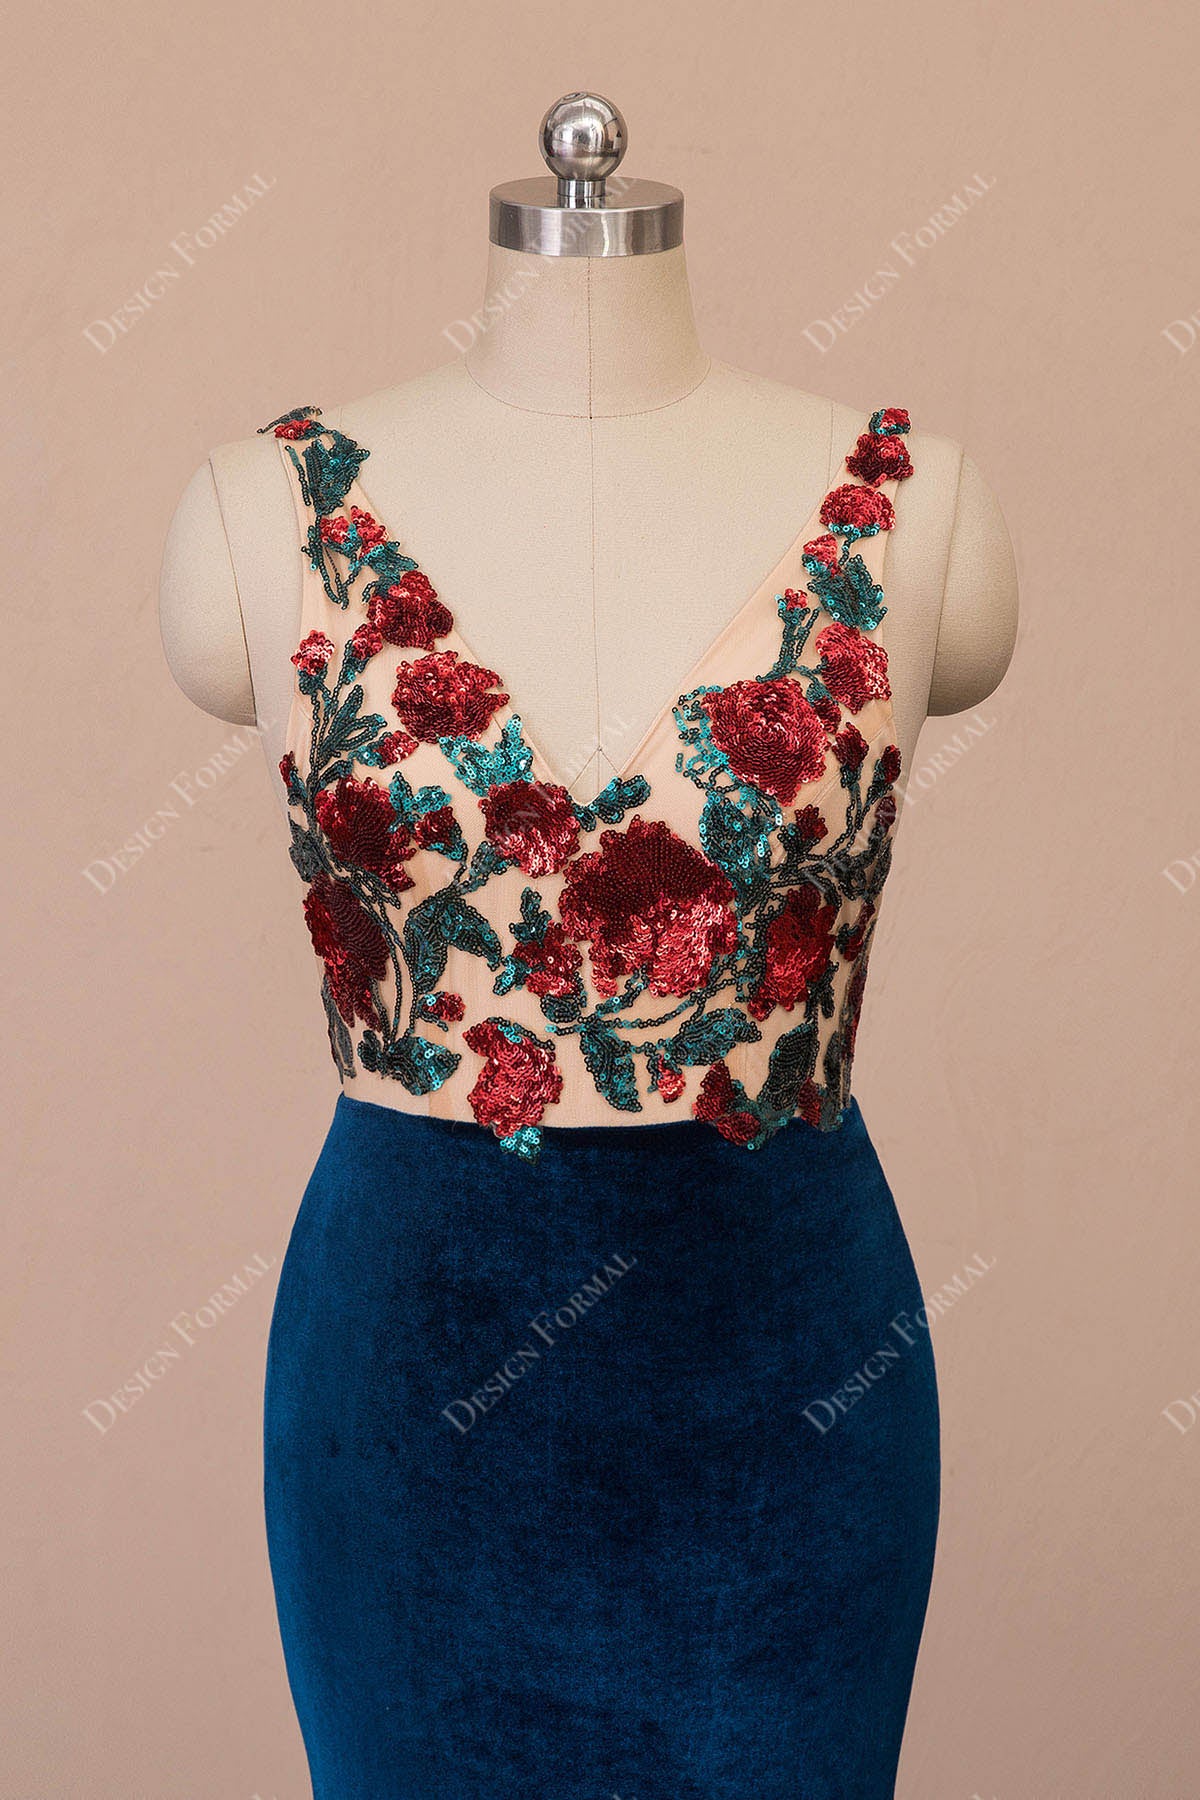 V-neck sleeveless red rose sequin prom dress